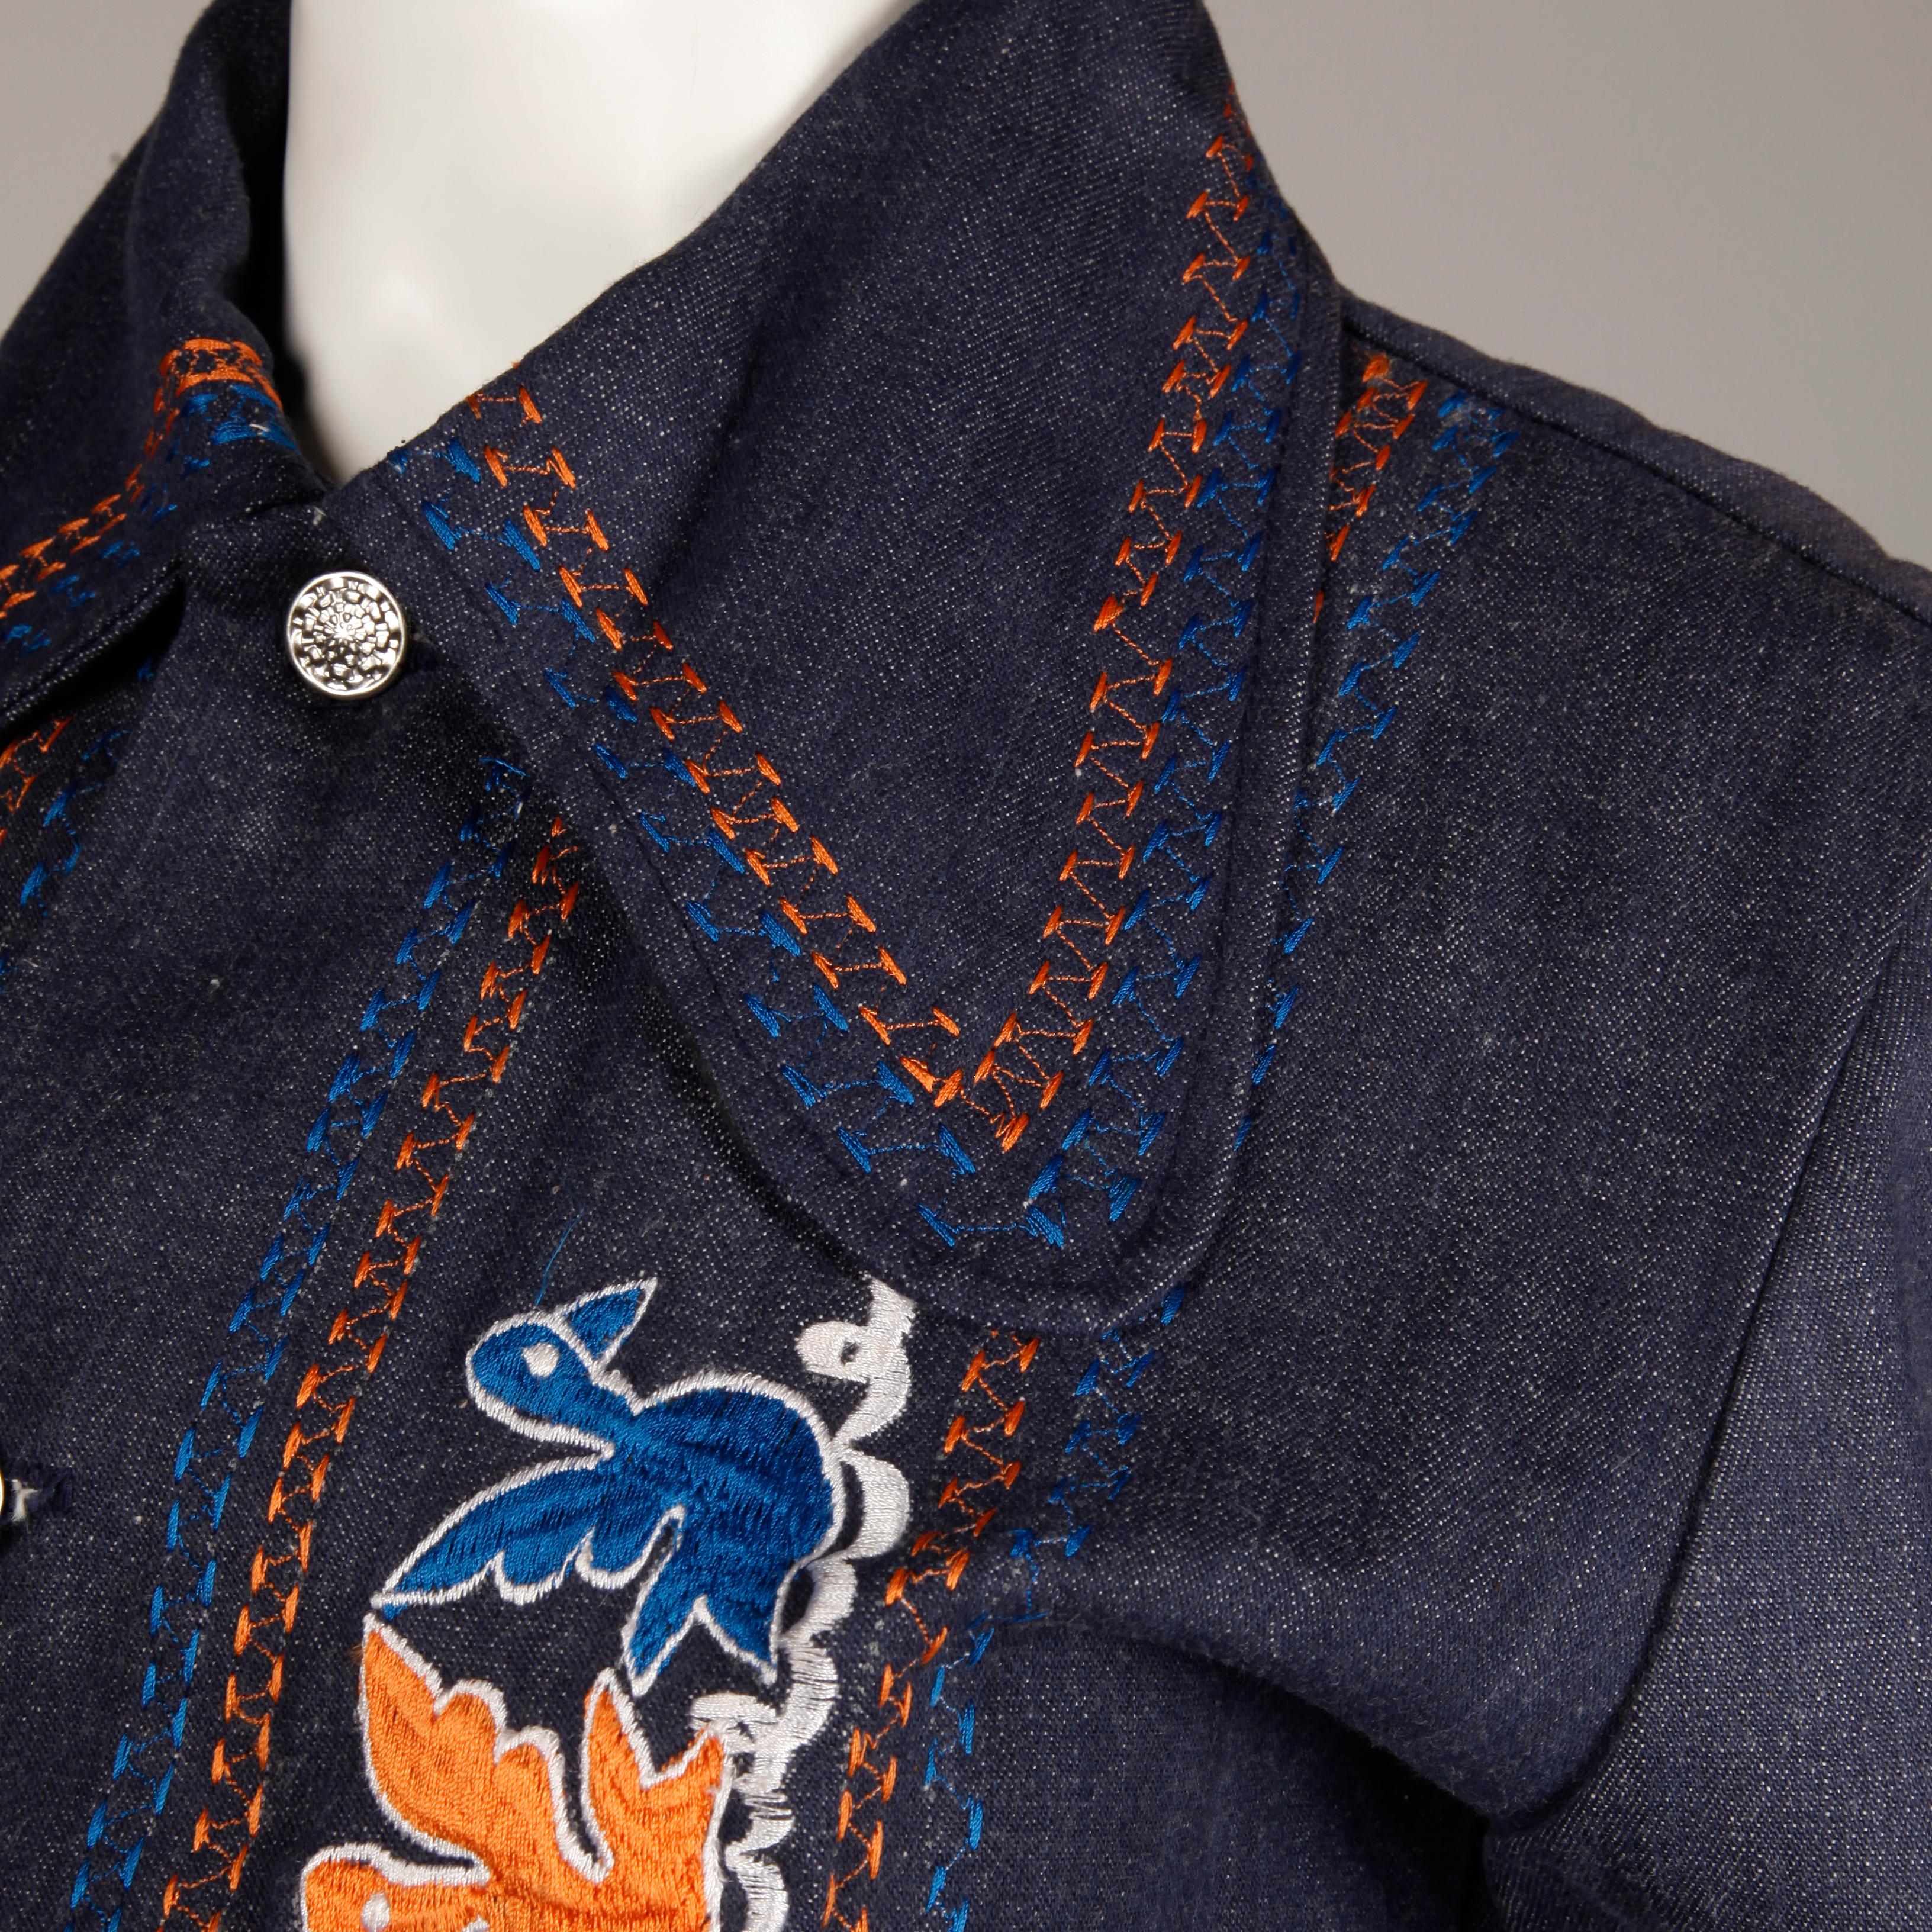 Black 1970s Vintage Hippie Denim Jean Jacket with Orange + Blue Bird Embroidery